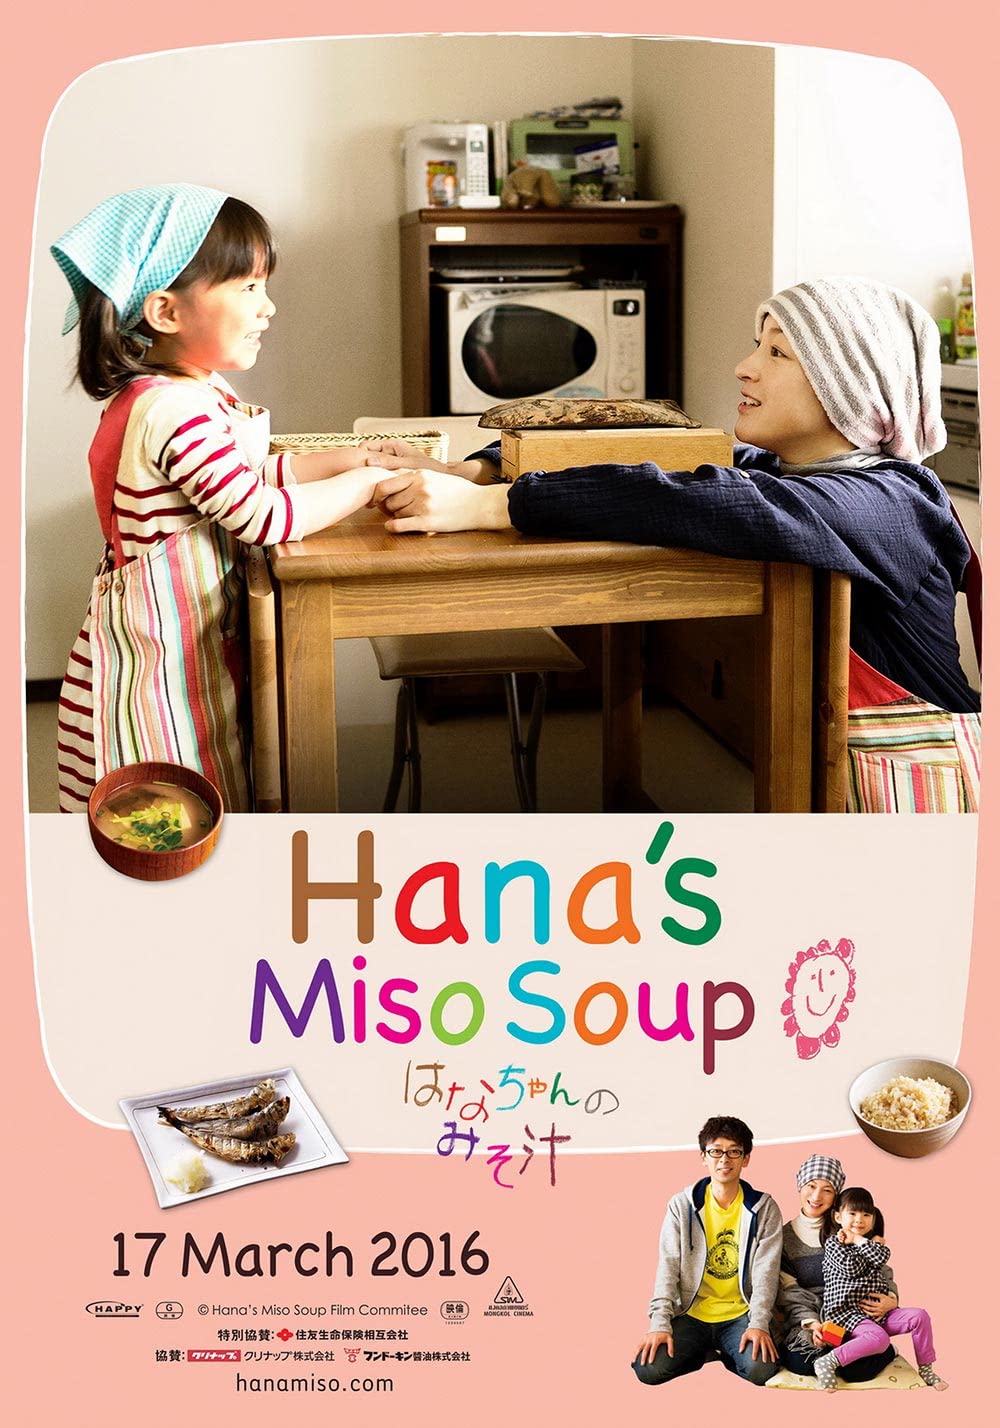 ดูหนังออนไลน์ฟรี Hana’s Miso soup 2015 มิโซะซุปของฮานะจัง